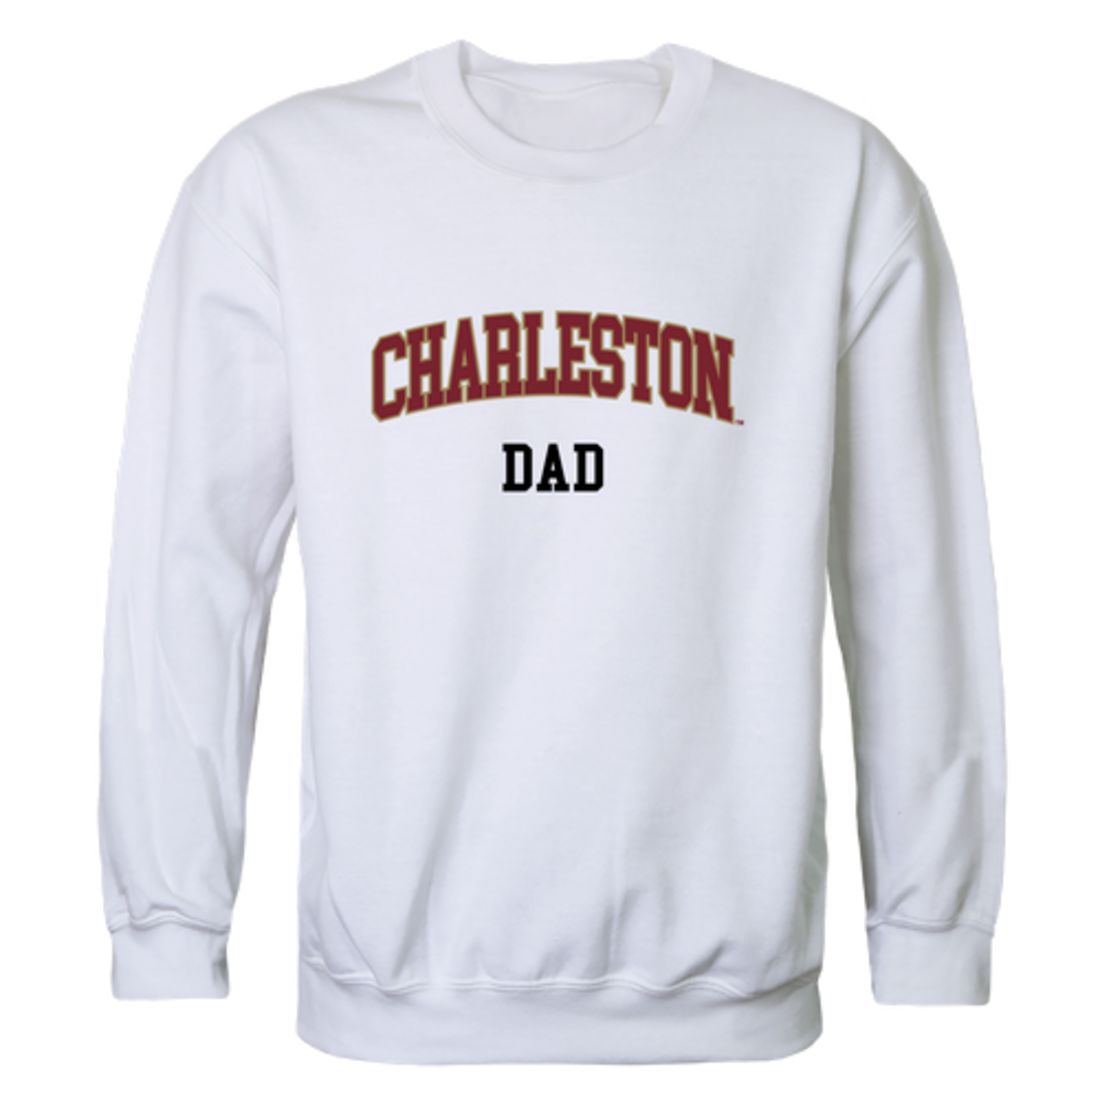 COFC College of Charleston Cougars Dad Fleece Crewneck Pullover Sweatshirt Heather Grey-Campus-Wardrobe